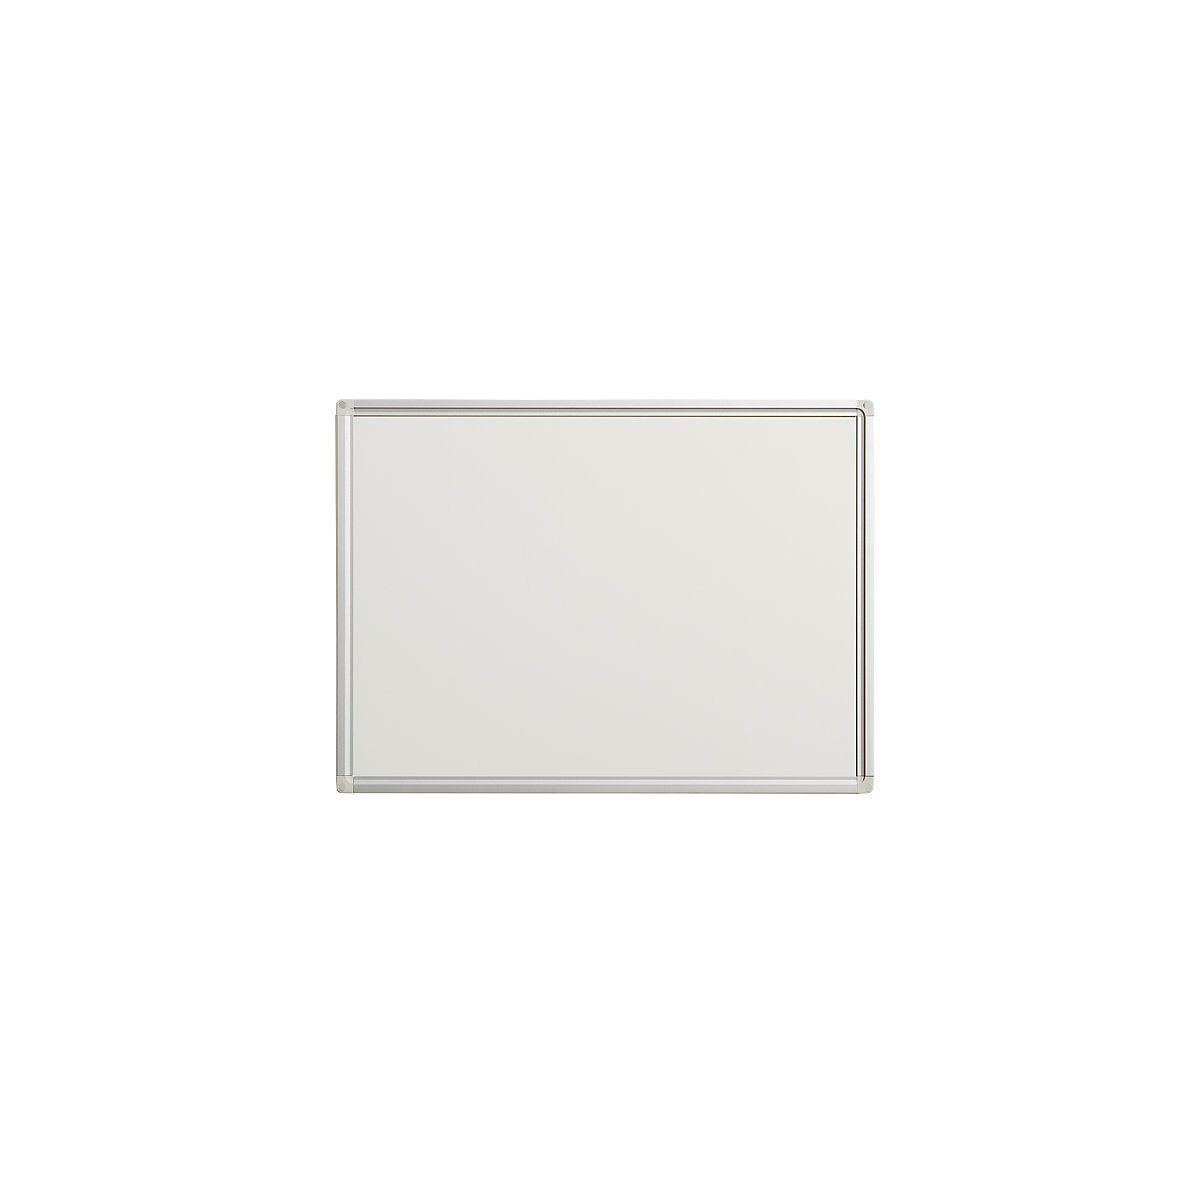 EUROKRAFTpro – Biała tablica Economy, blacha stalowa, lakierowana, szer. x wys. 600 x 450 mm